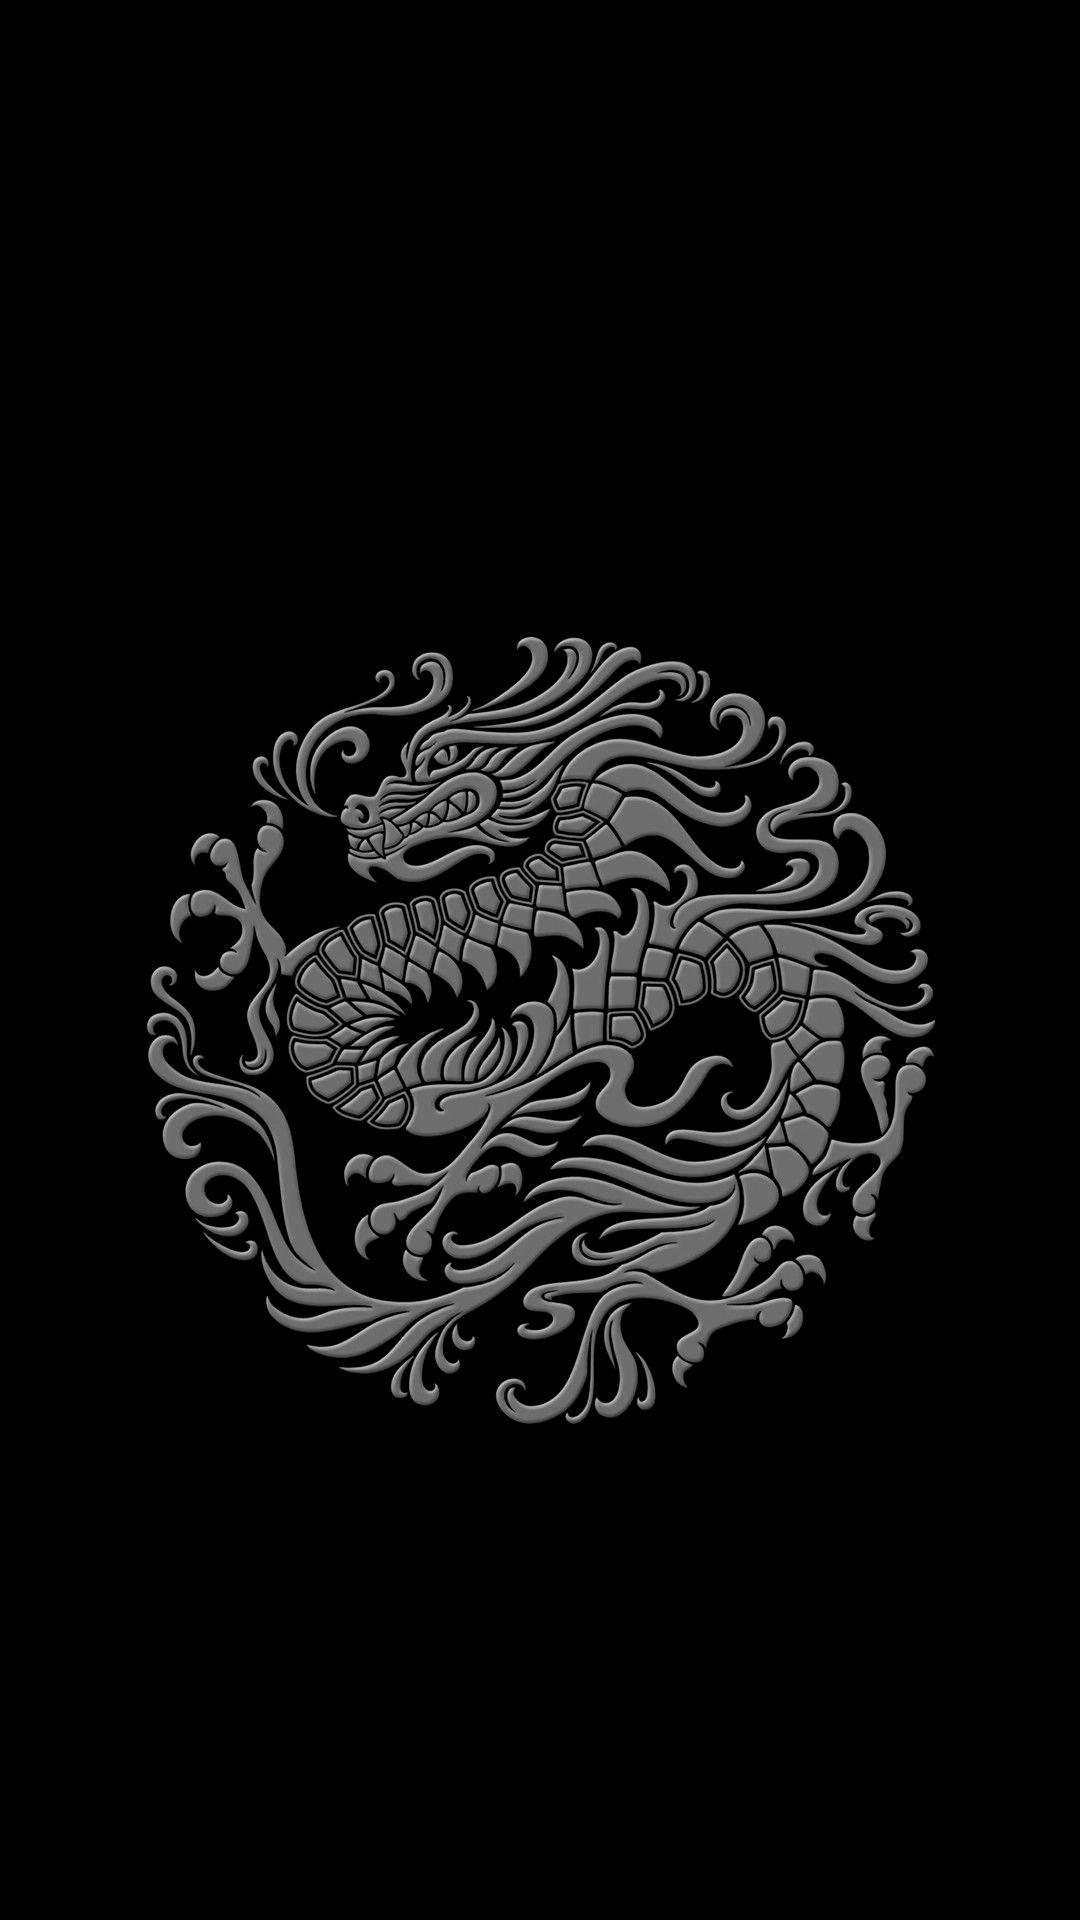 wallpaper japanese and dragon  image 6102630 on Favimcom